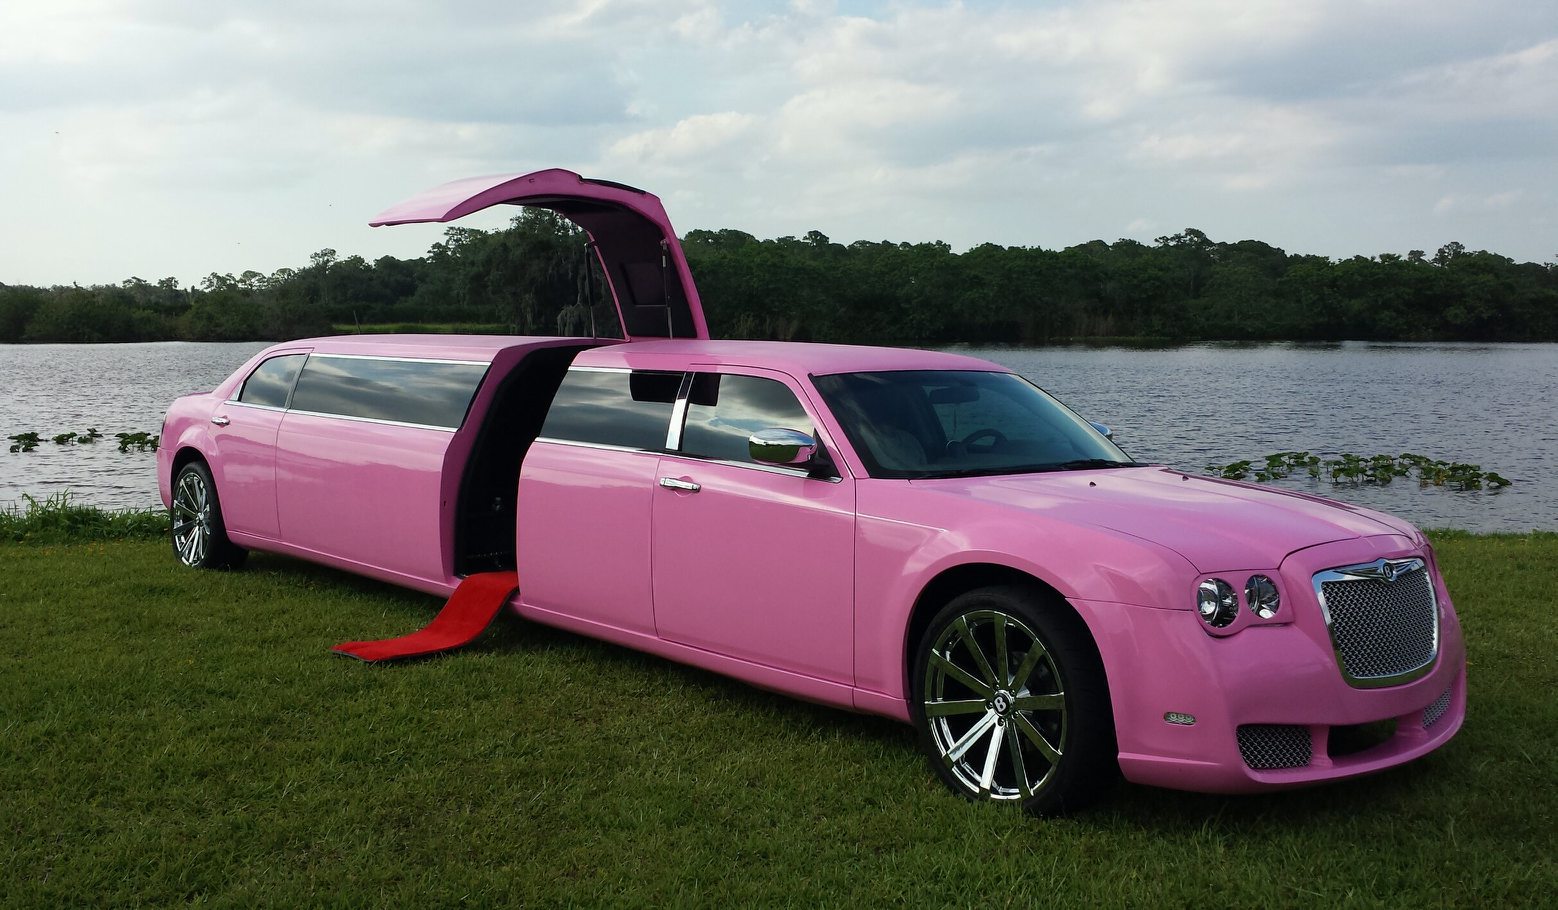 Naples Pink Chrysler 300 Limo 